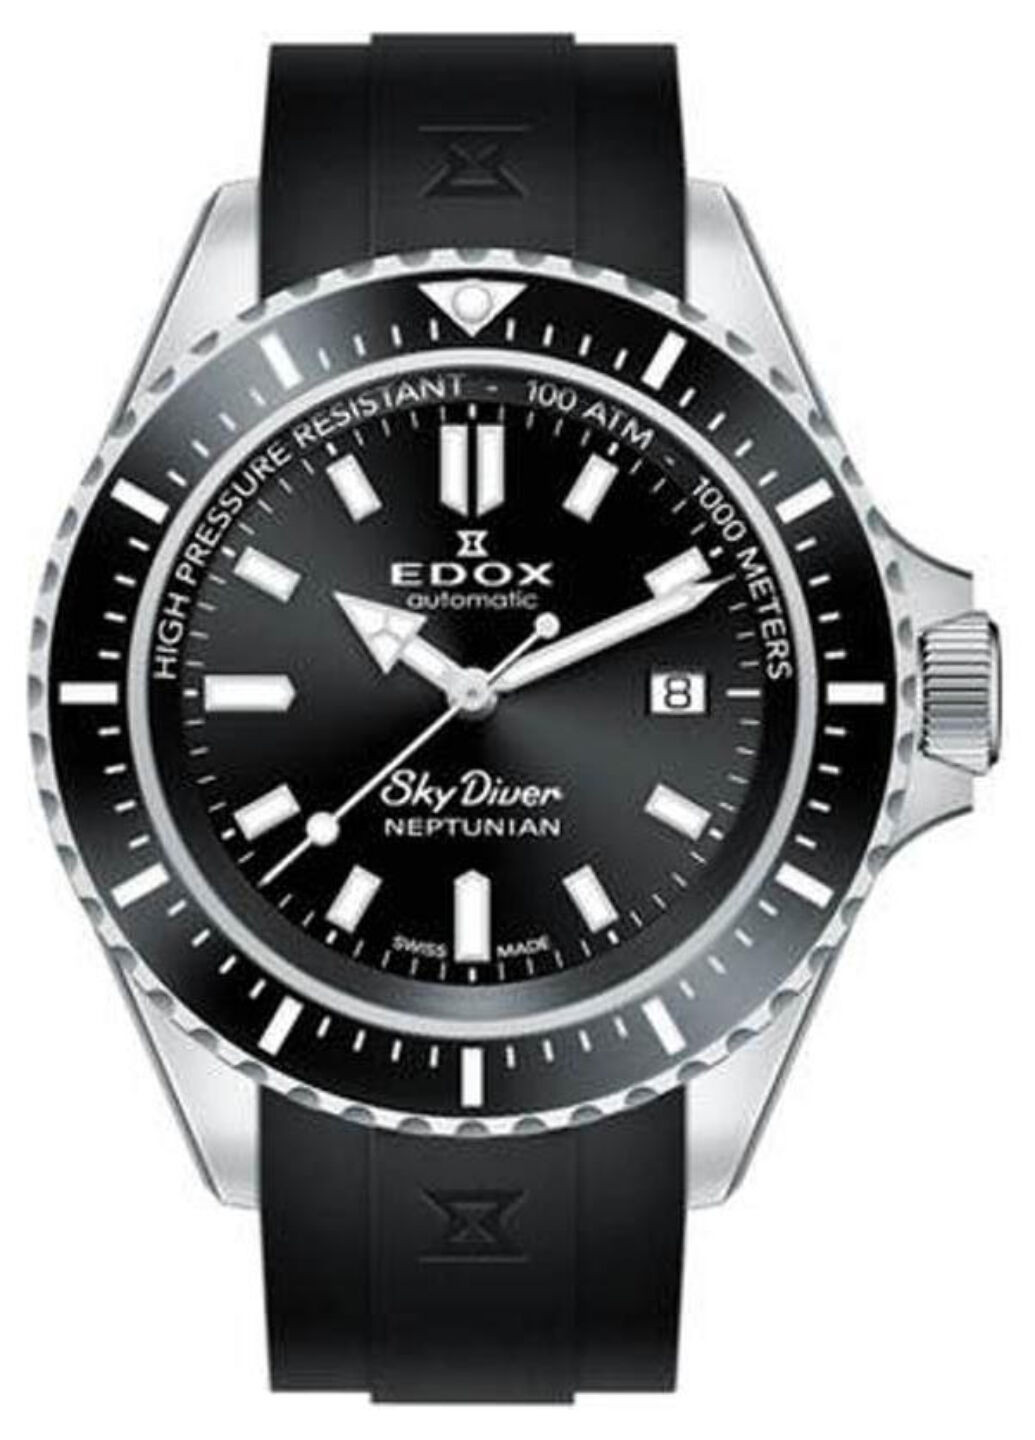 Часы наручные Edox 80120 3nca nin skydiver neptunian (272157980)